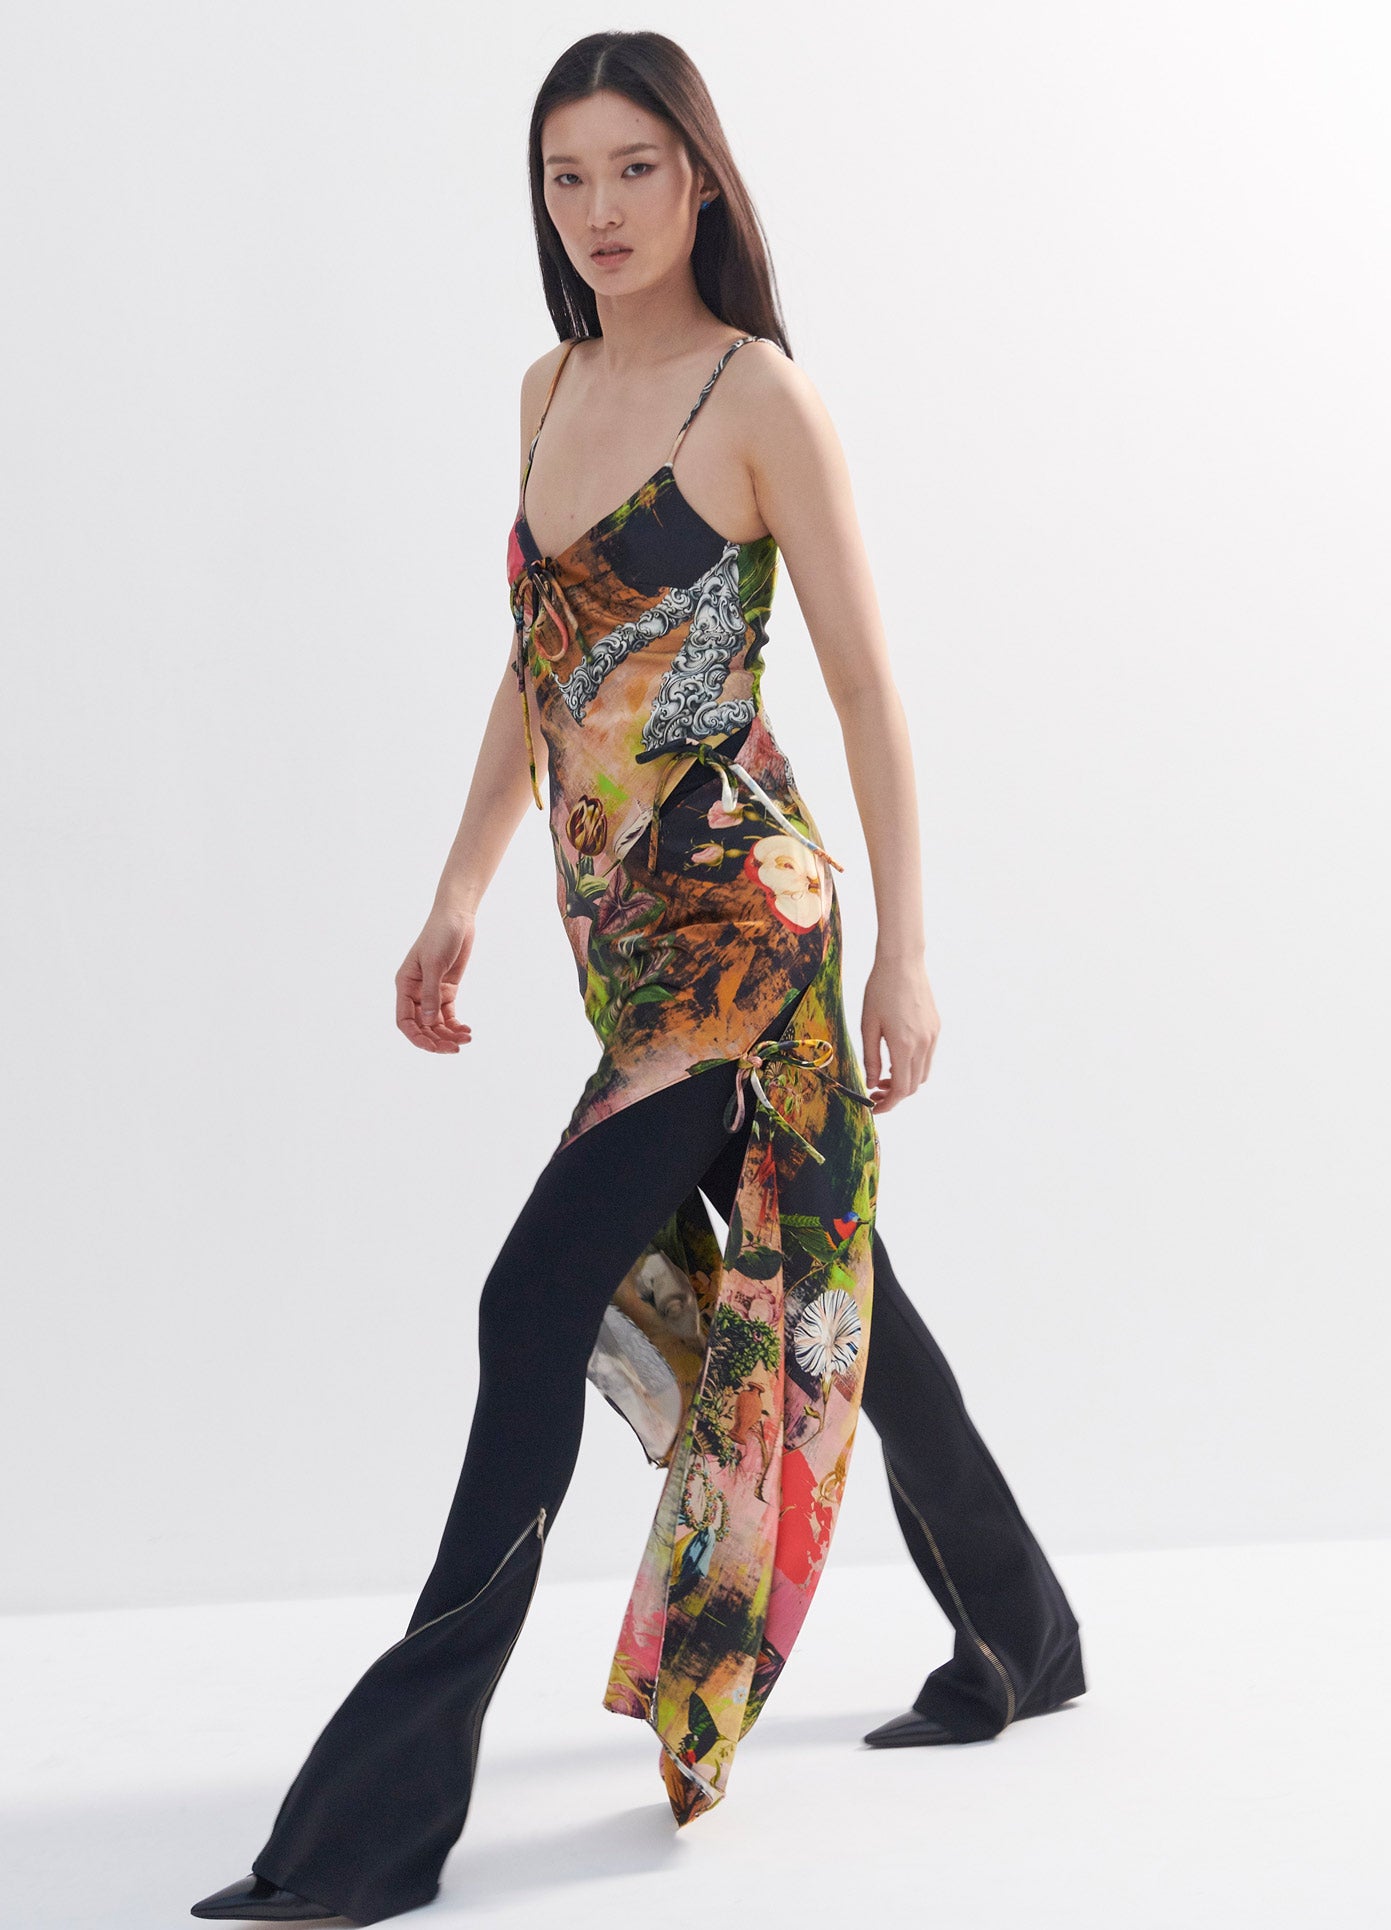 MONSE Print Slip Dress in Print Multi on Model Walking Left Side View